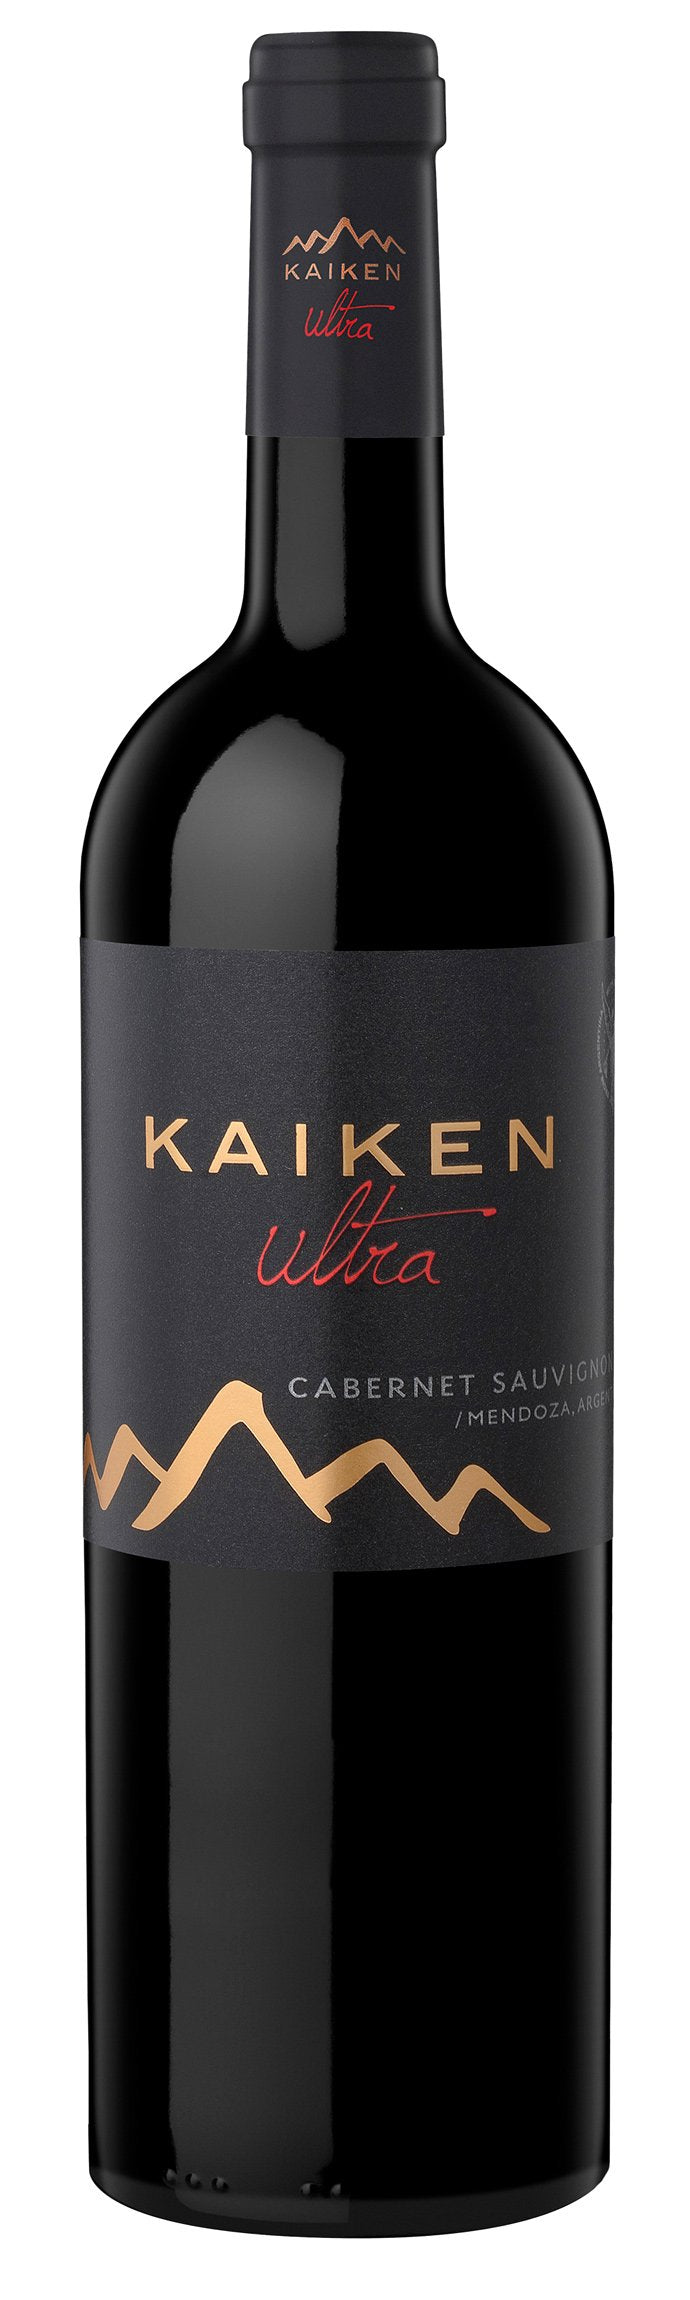 Kaiken Cabernet Sauvignon Ultra 2016